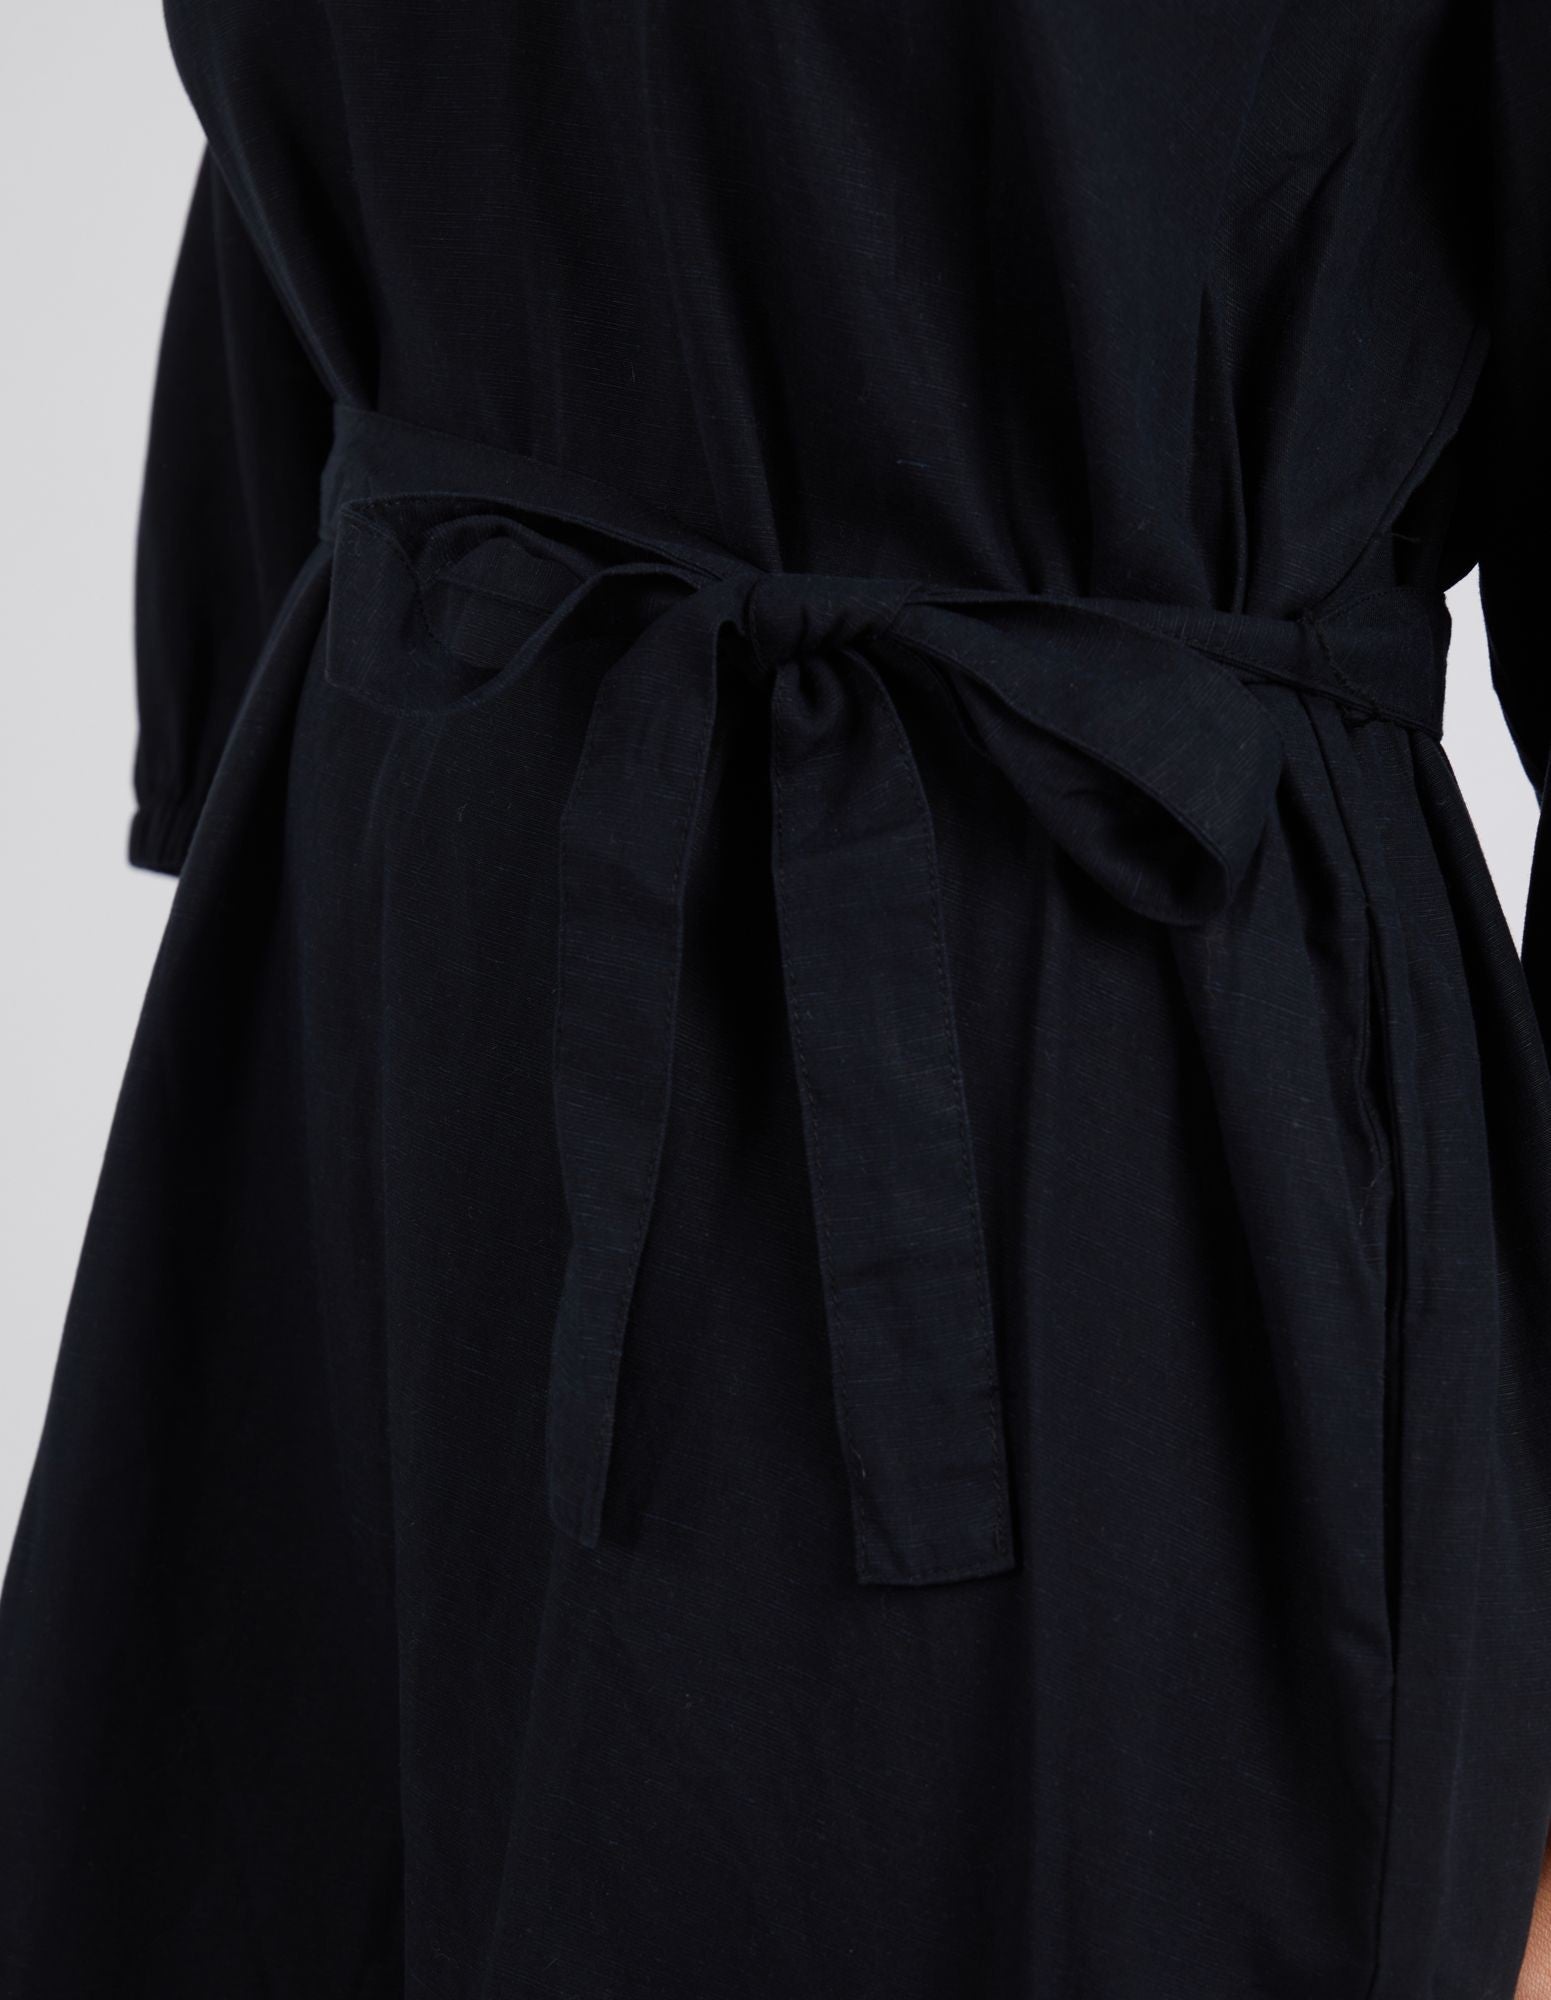 Elm Agnes Dress [COLOUR:Black SIZE:8]